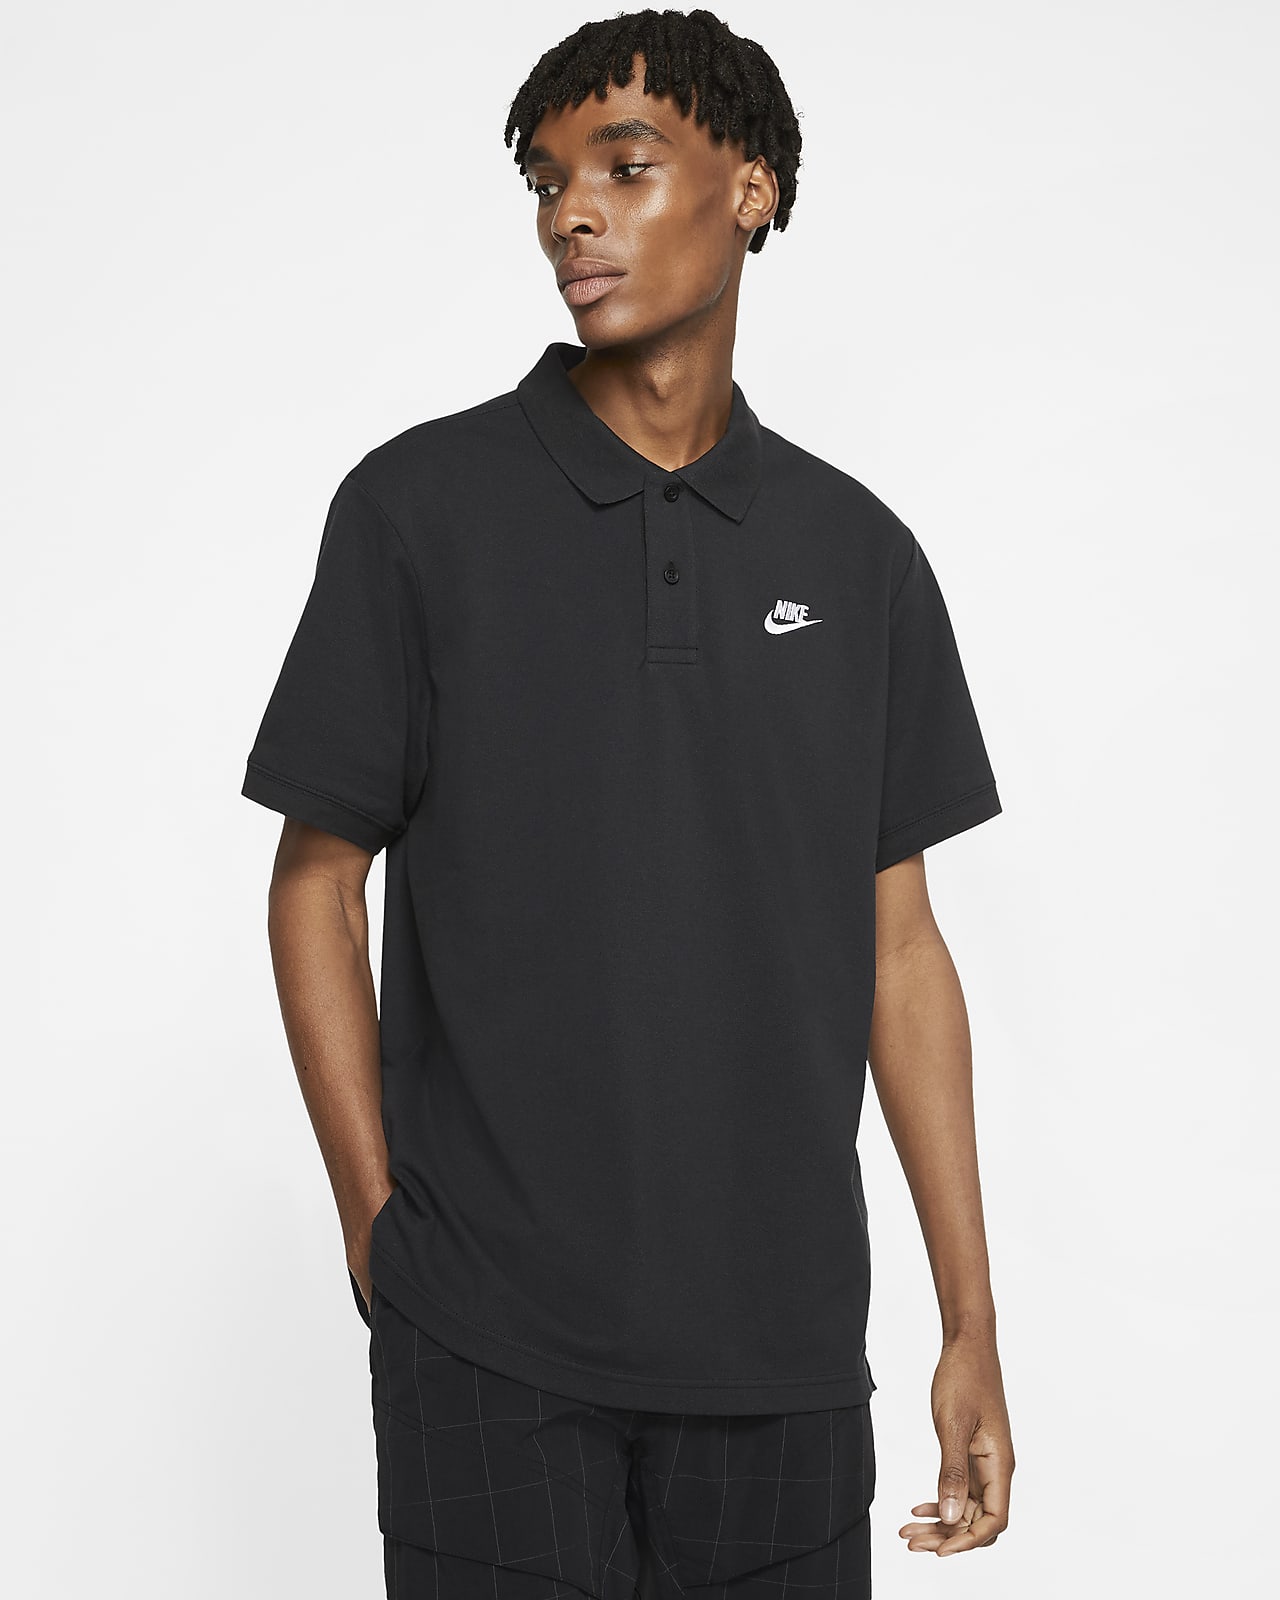 Ανδρική μπλούζα πόλο Nike Sportswear